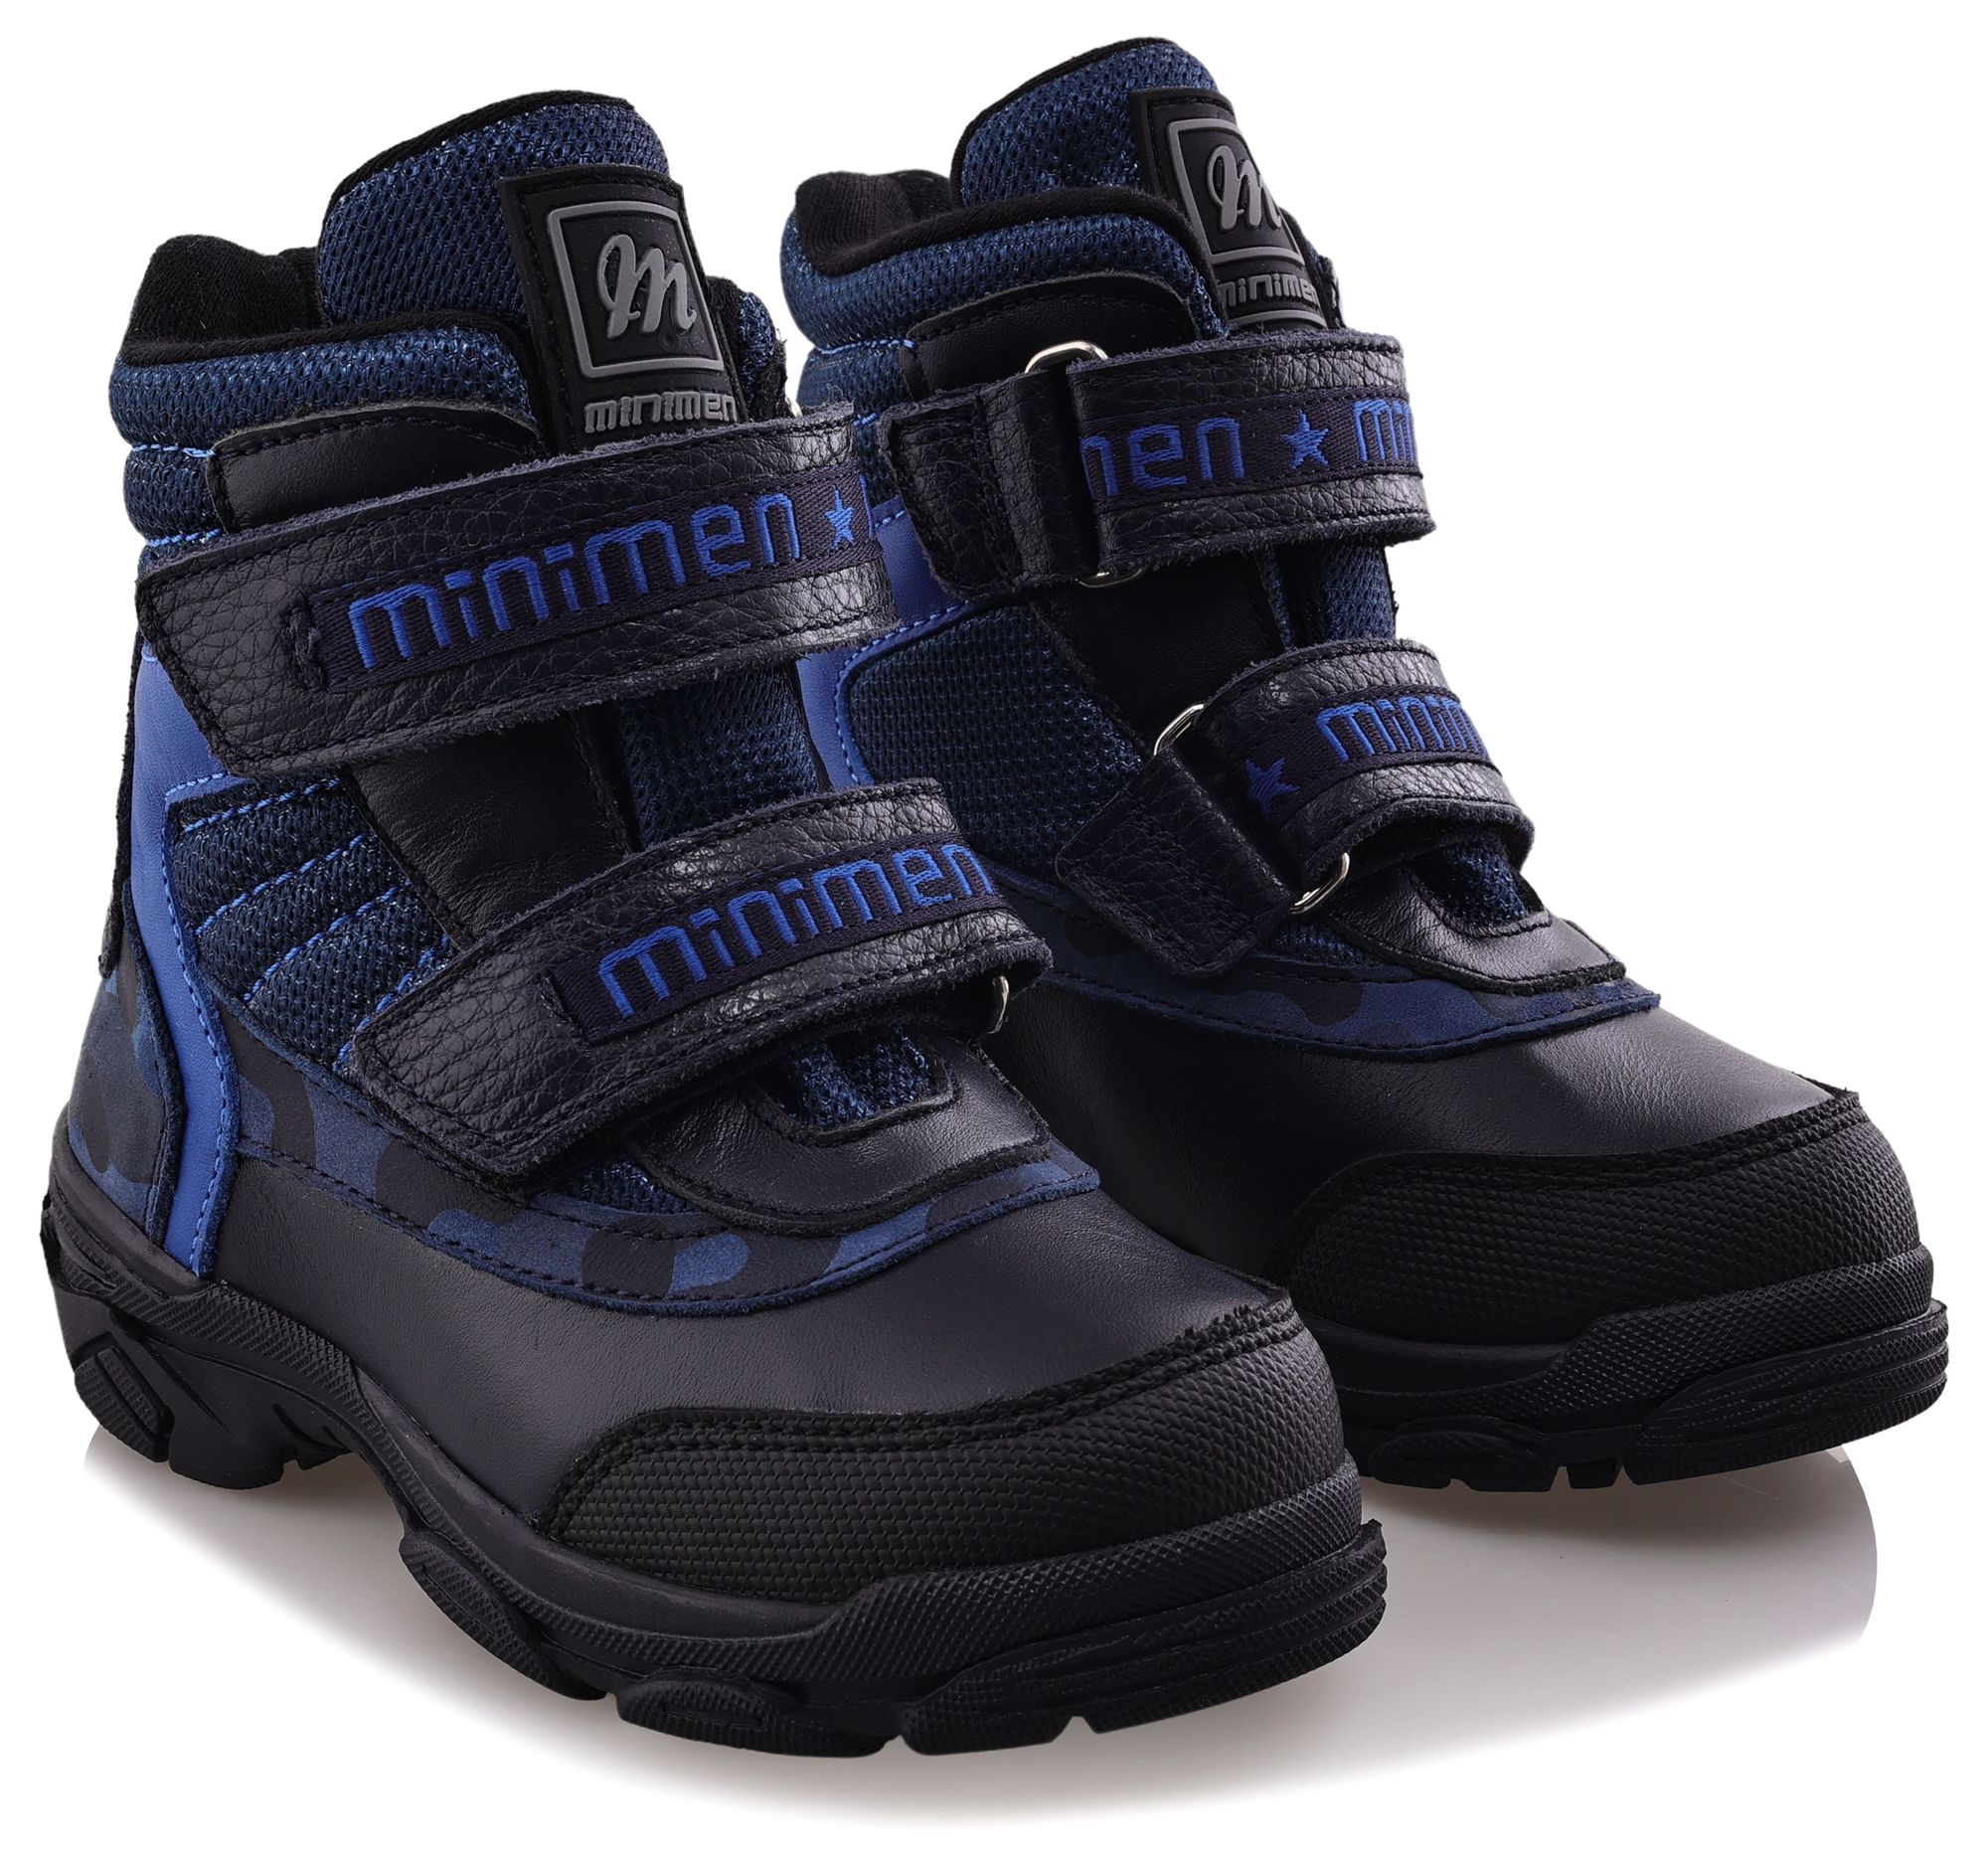 Ботинки Minimen для мальчиков, тёмно-синие, размер 24, 2655-52-23B-02